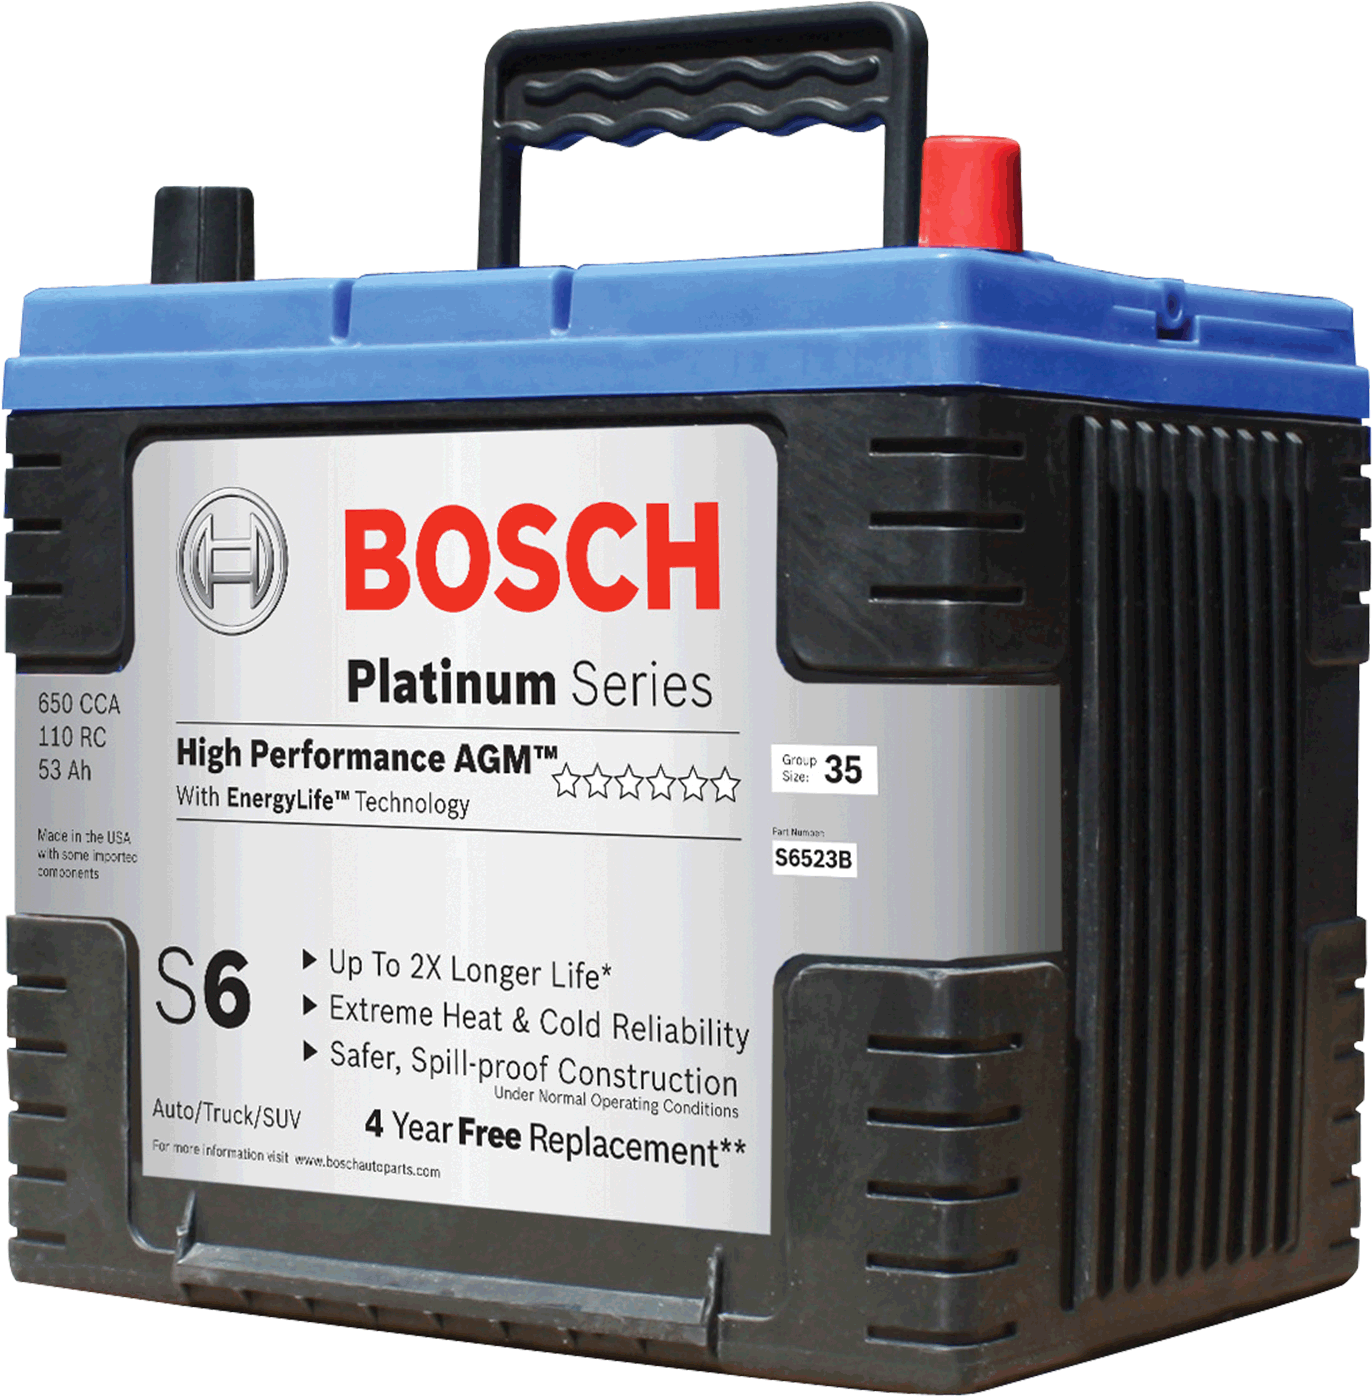 Bosch Automotive Batteries PNG Clipart Background